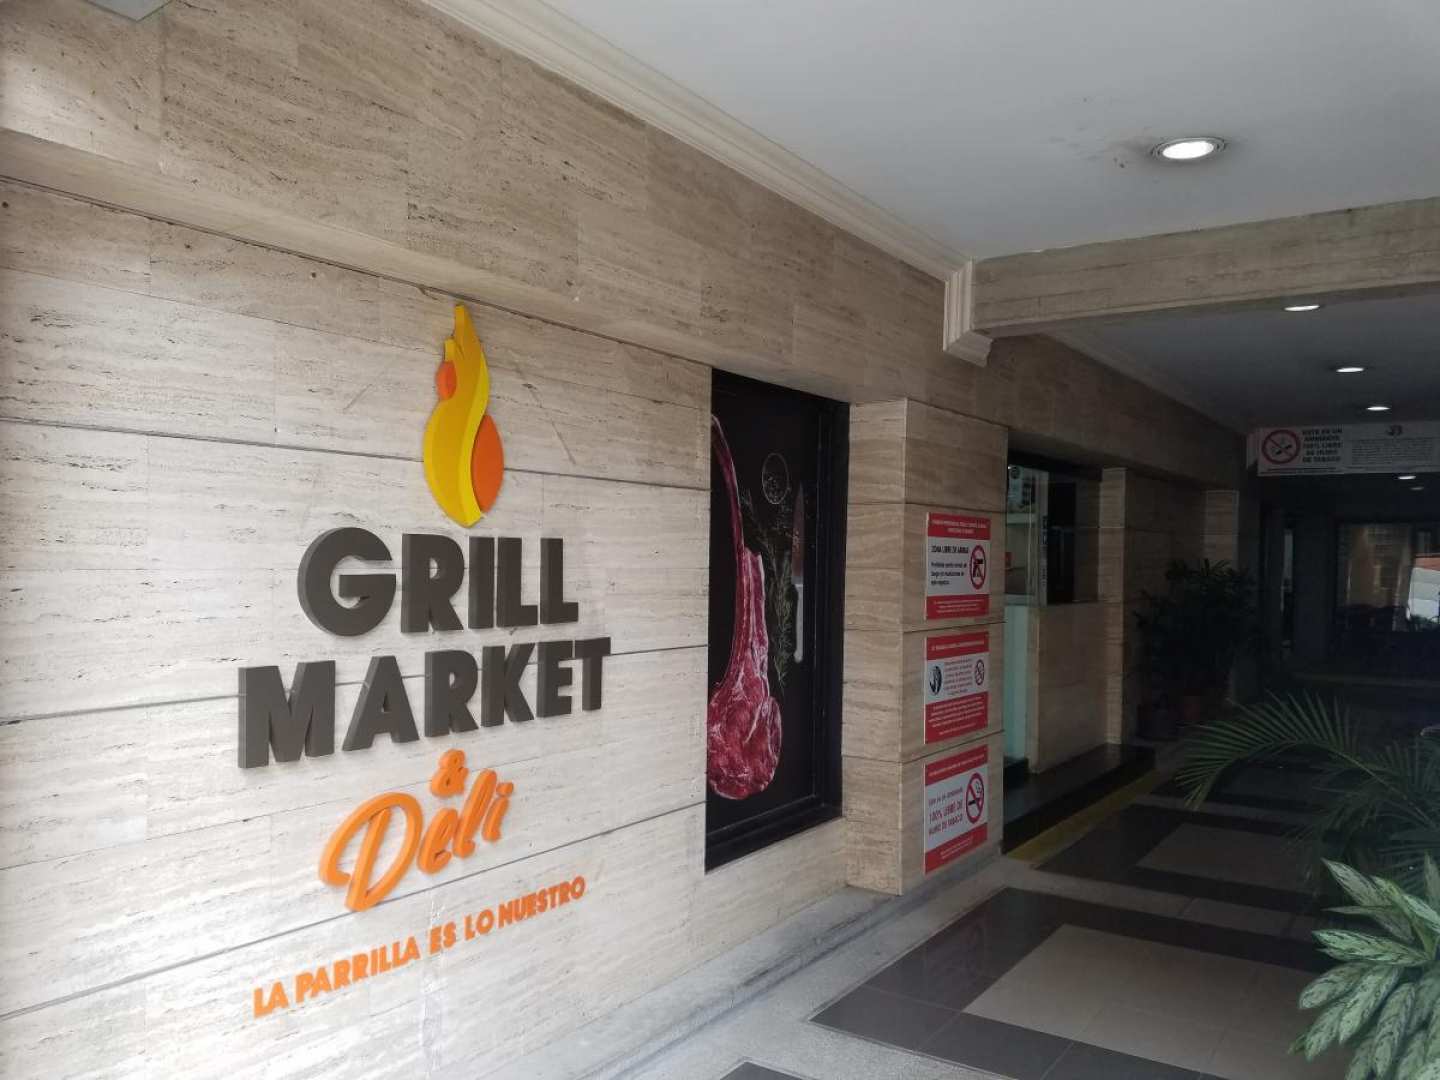 Grill Market Deli